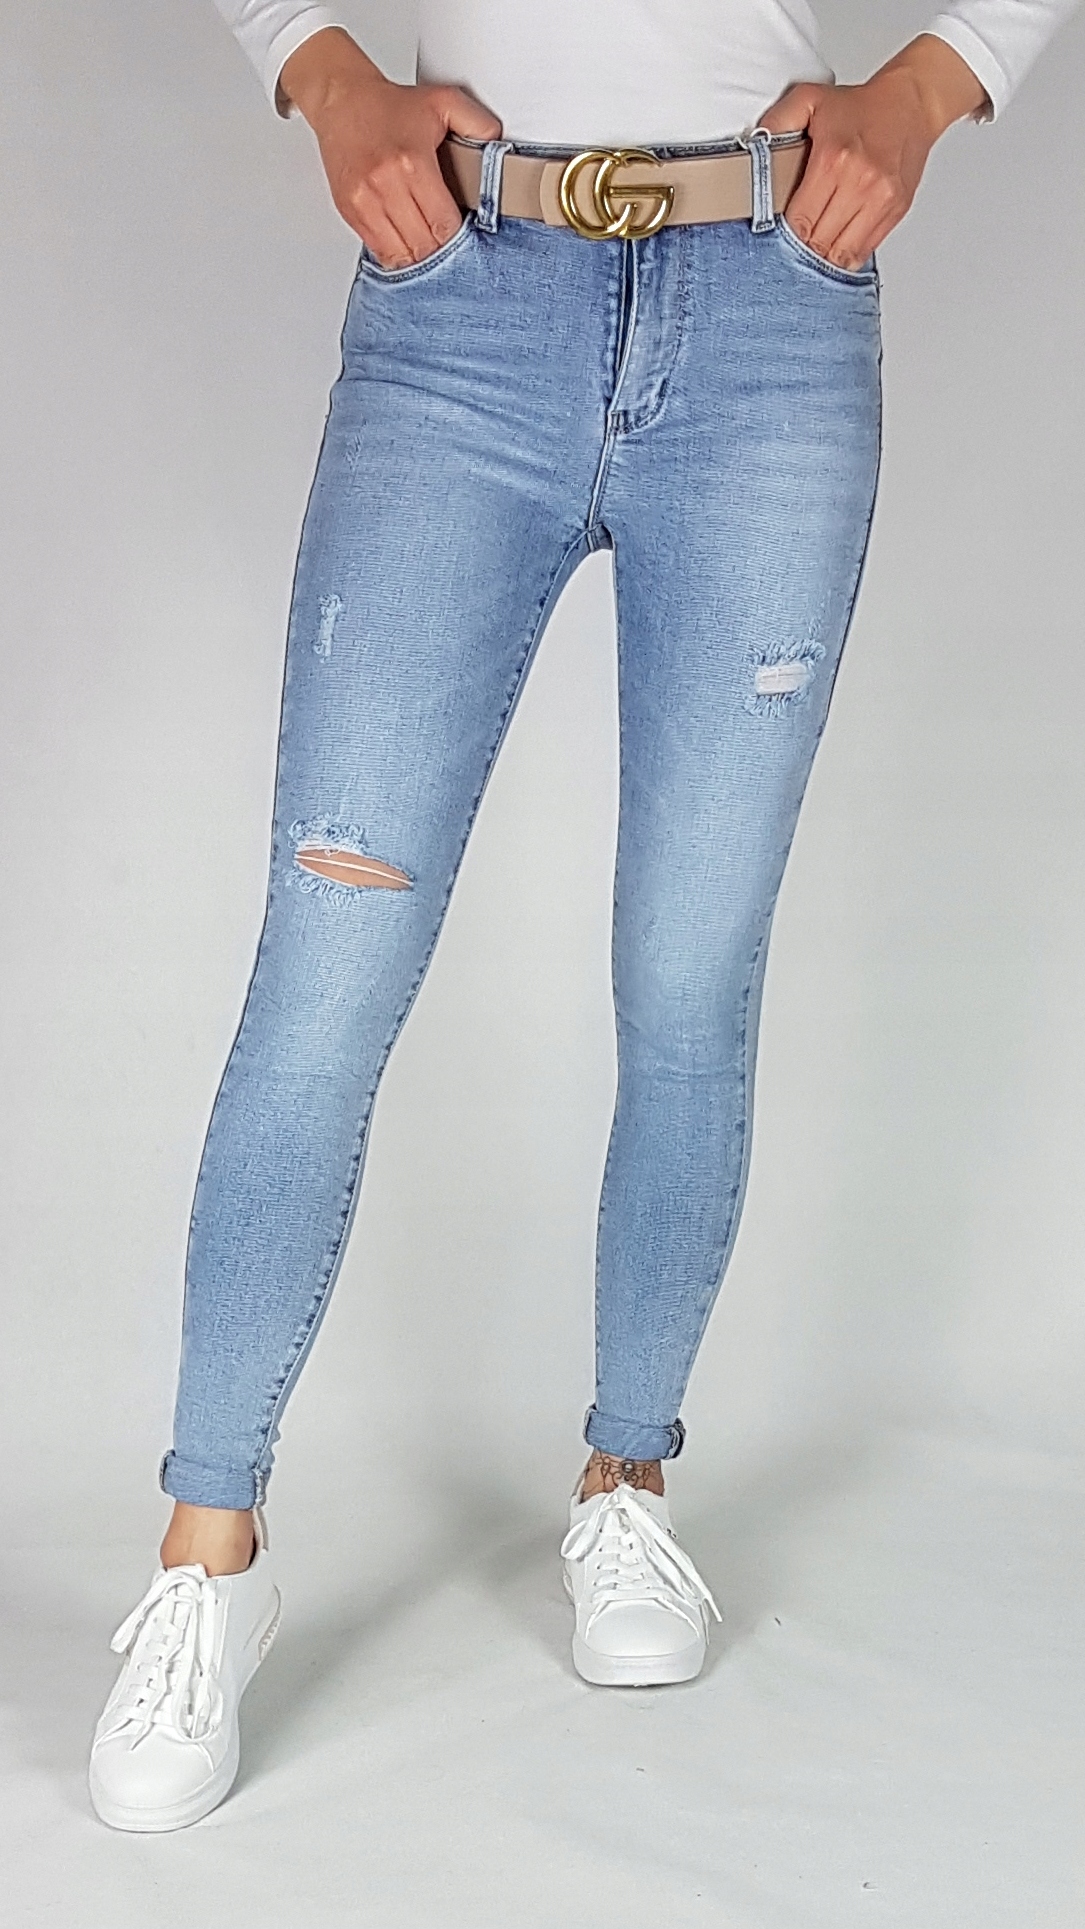 M. SARA джинсовые брюки с отверстиями размер s Cut skinny jeans